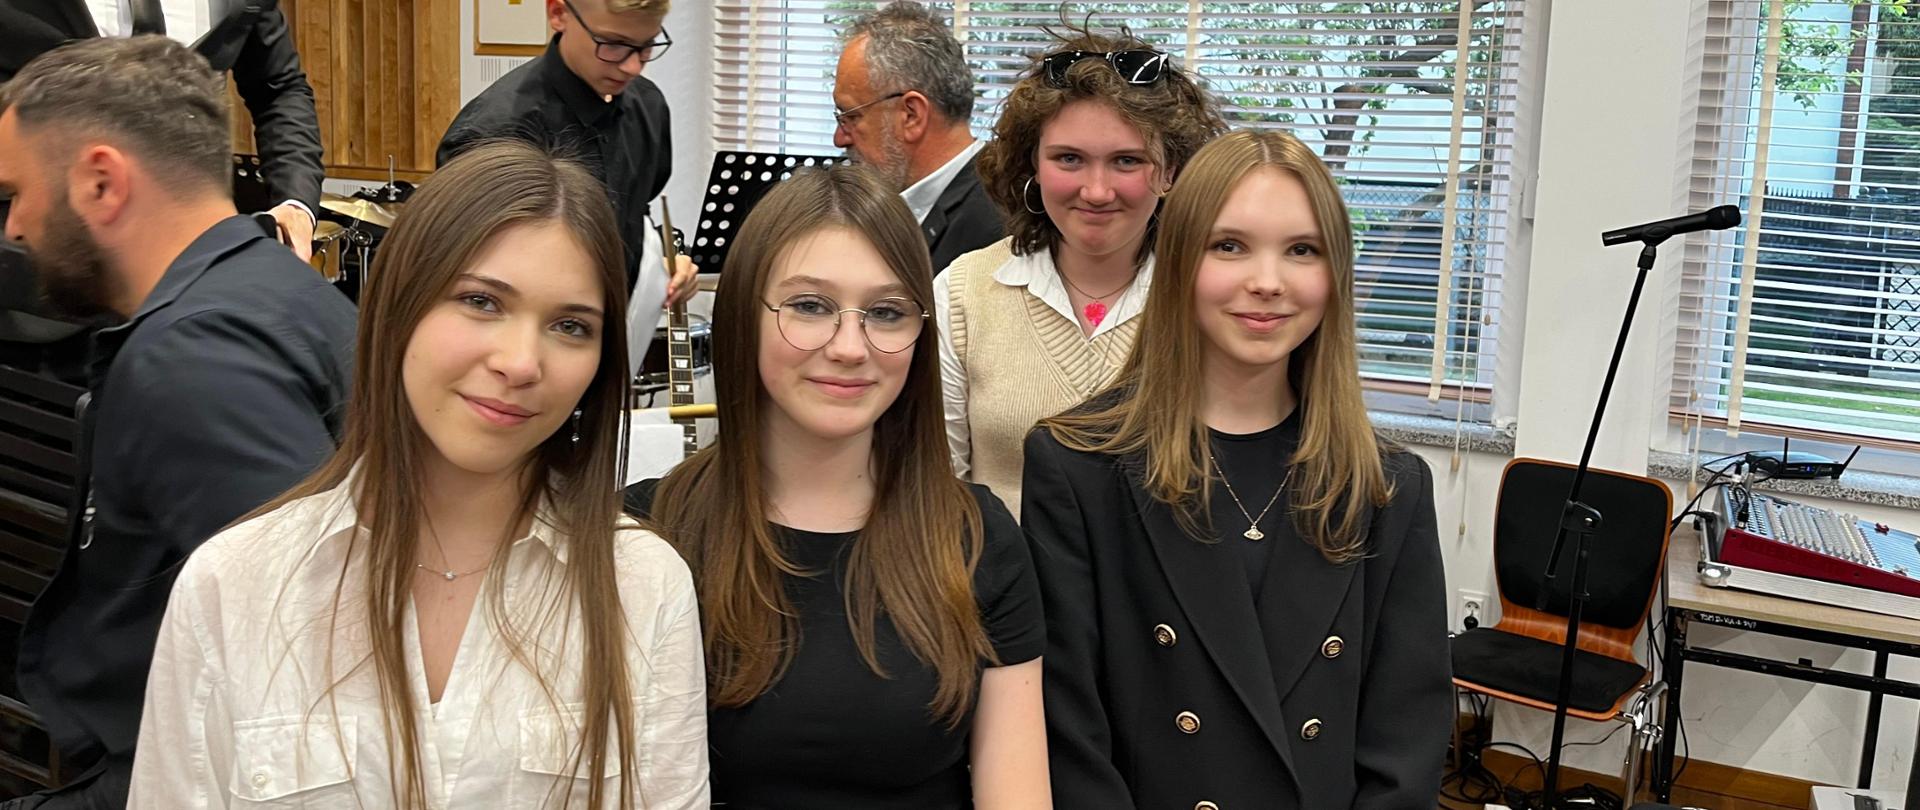 Grupa uśmiechniętych uczennic w strojach galowych stoi w jednej z klas PSM w Gorlicach. W tle pedagog i inni uczniowie. Ogólna kolorystyka czarno-brązowa.